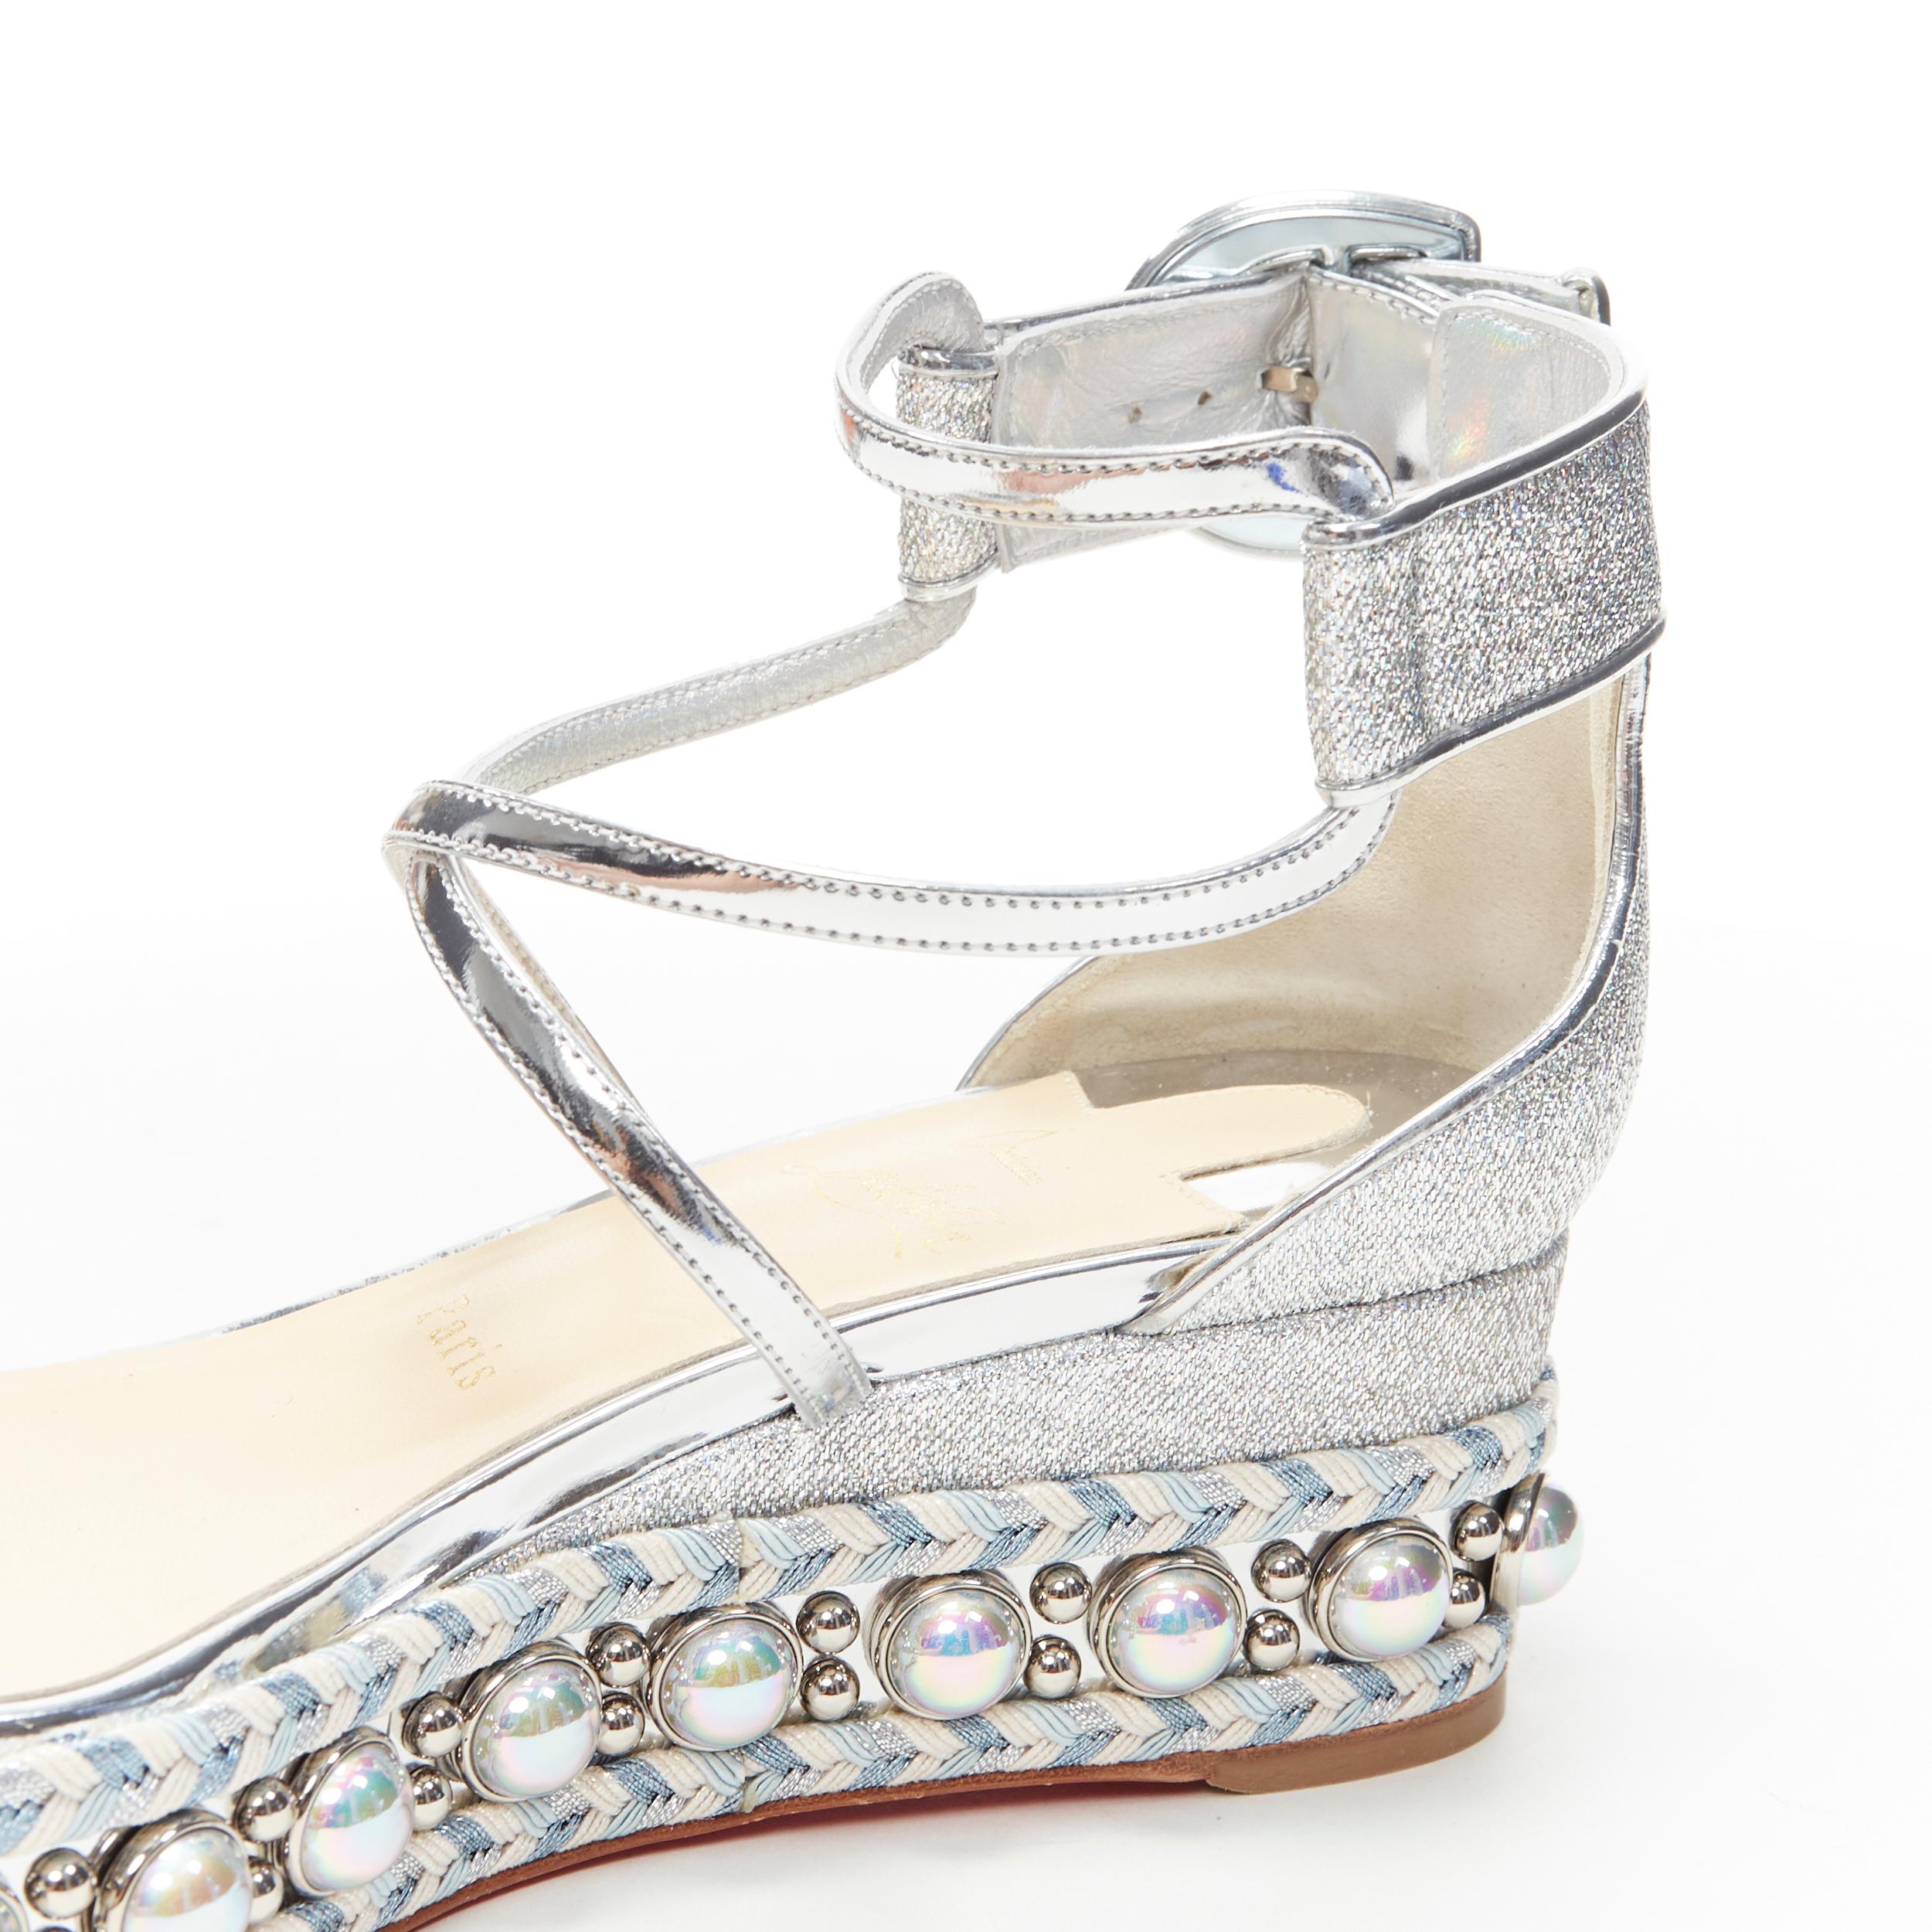 new CHRISTIAN LOUBOUTIN Chocazeppa 60 silver lurex studded platform sandals EU37 3